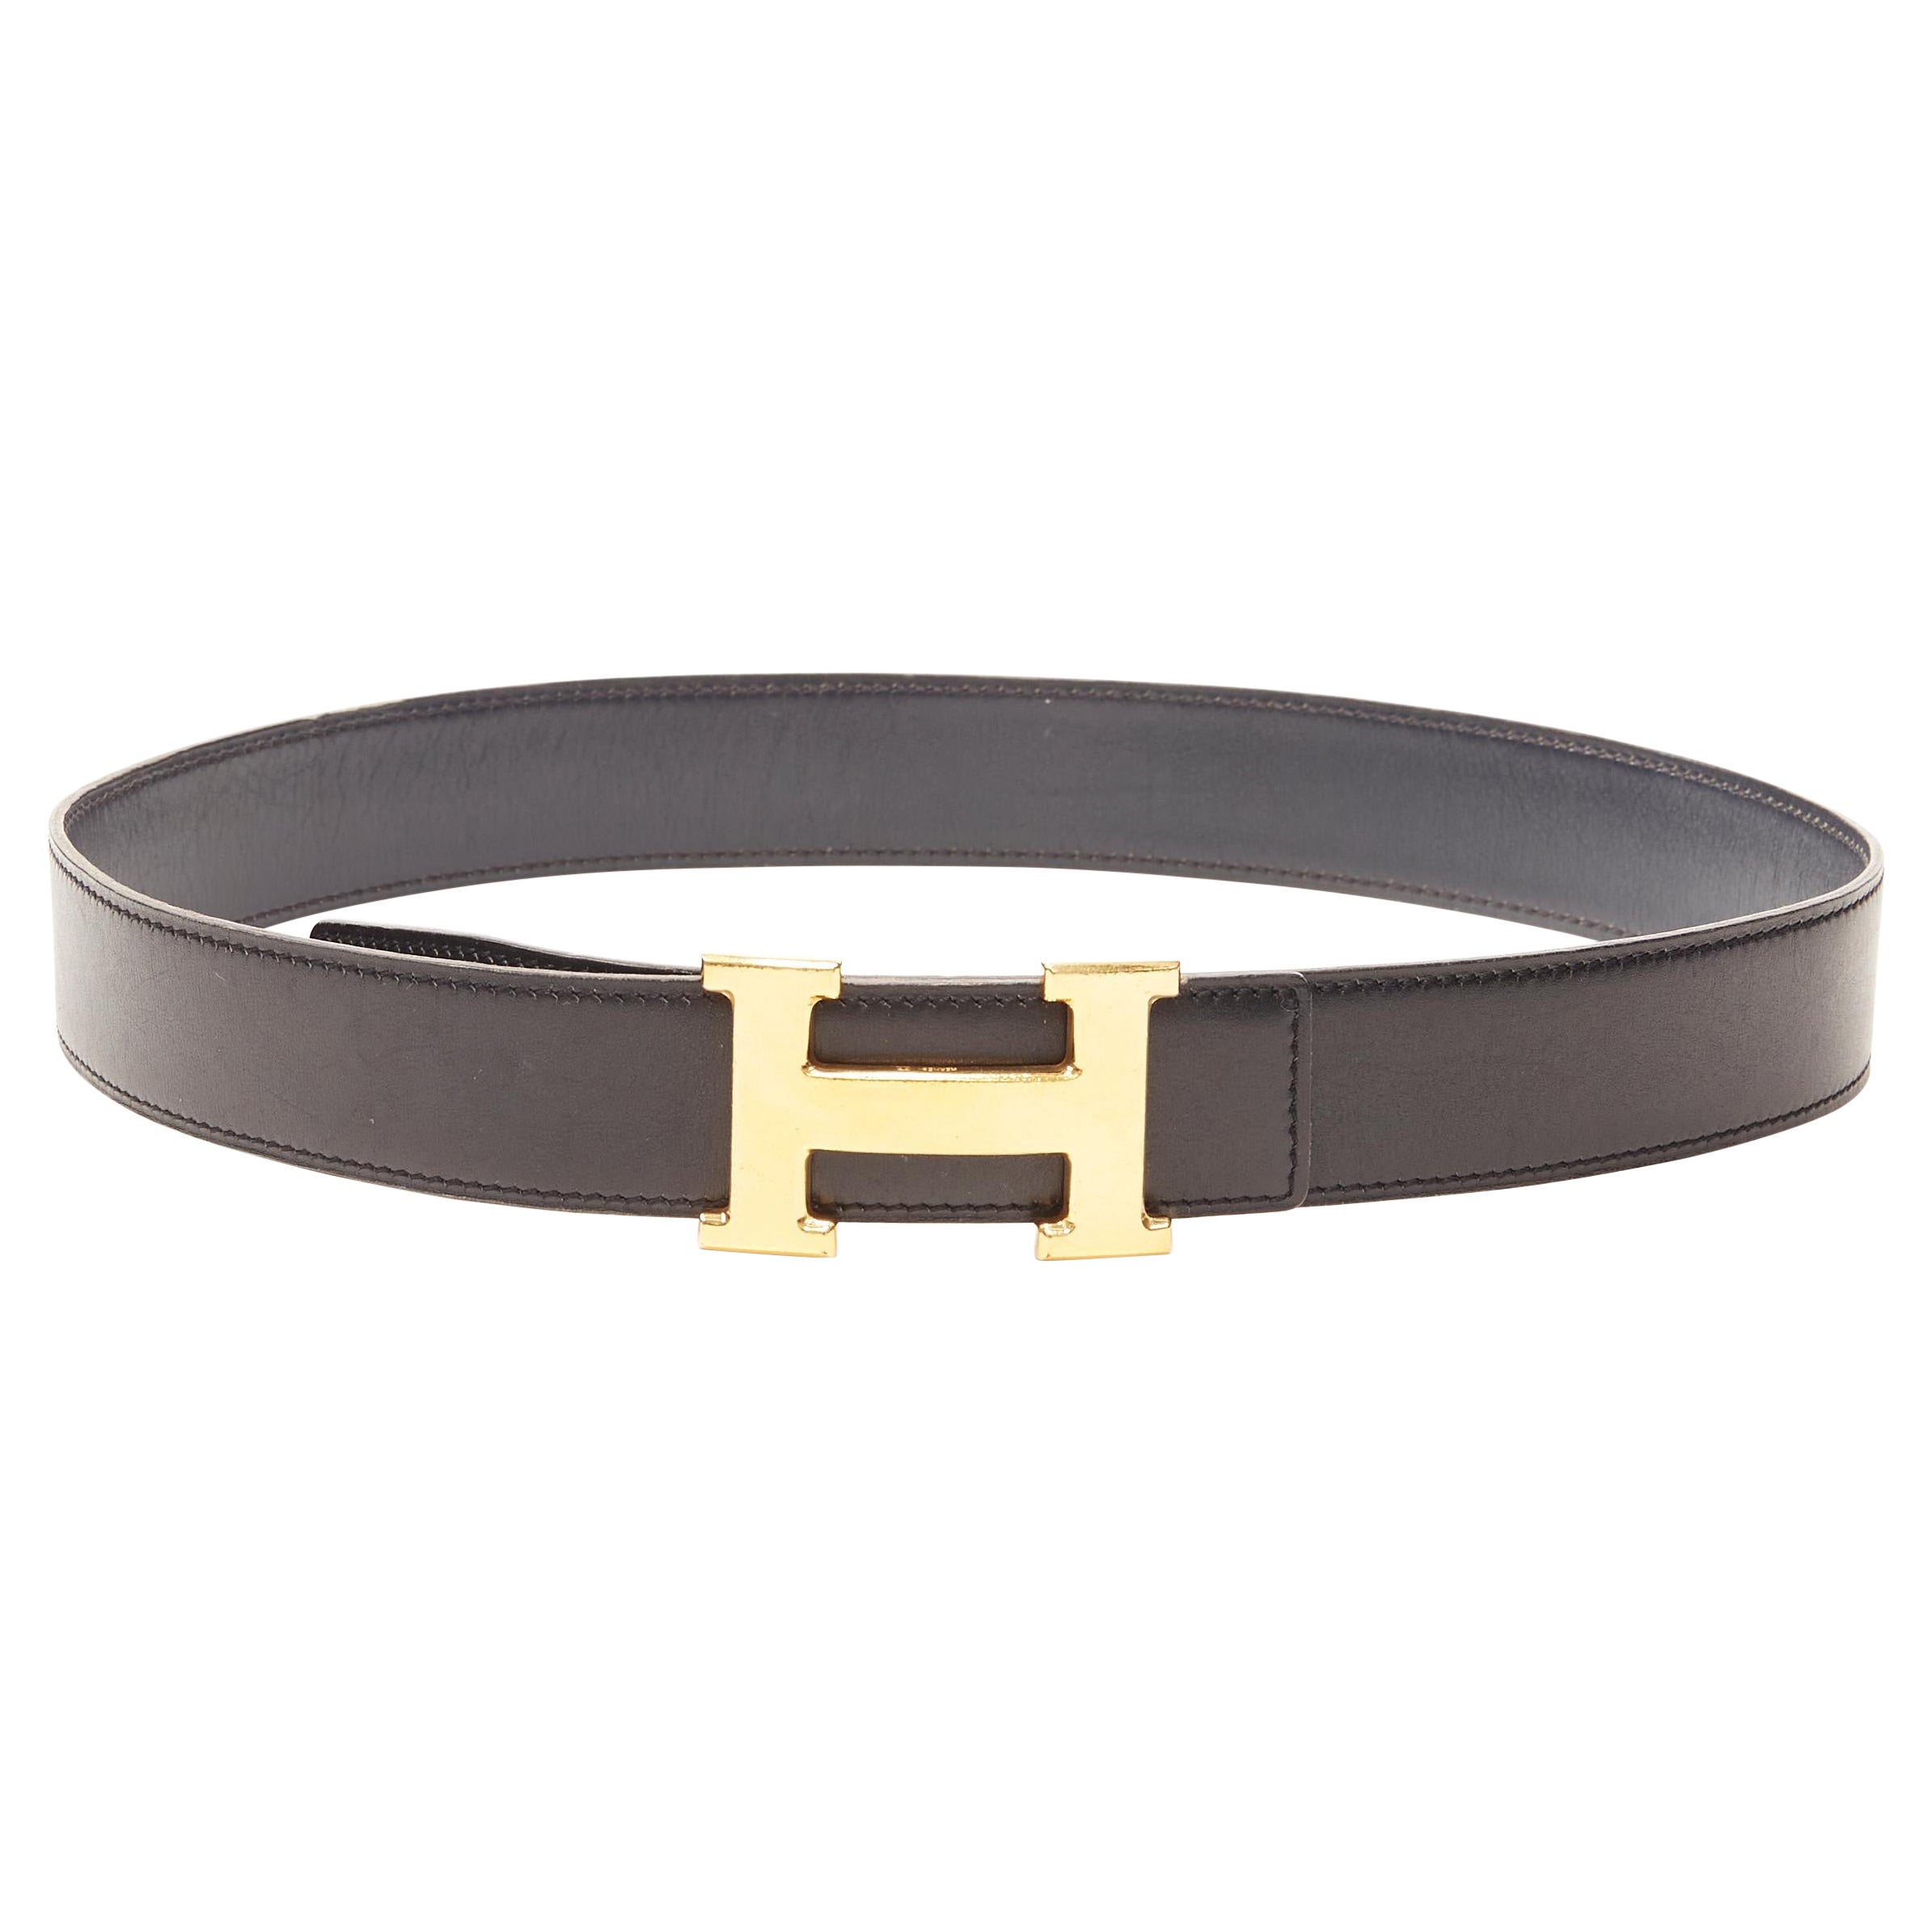 HERMES black leather hammered gold-tone H metal buckle leather belt FR 70